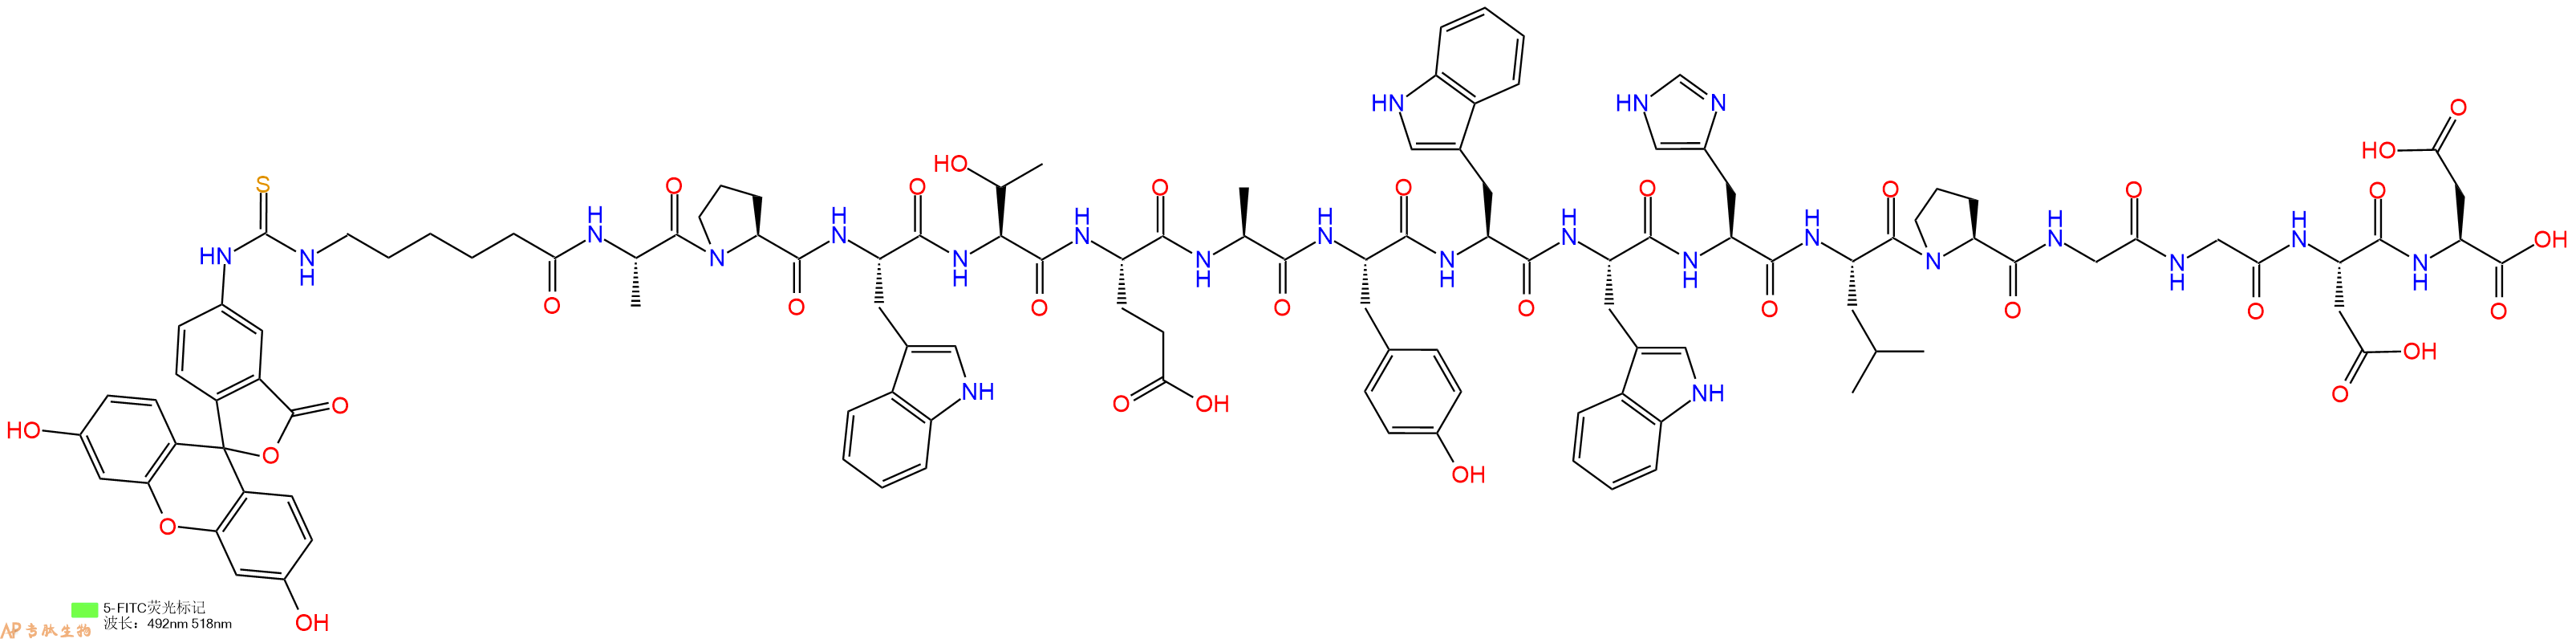 专肽生物产品十七肽Fitc-Acp-APWTEAYWWHLPGGDD